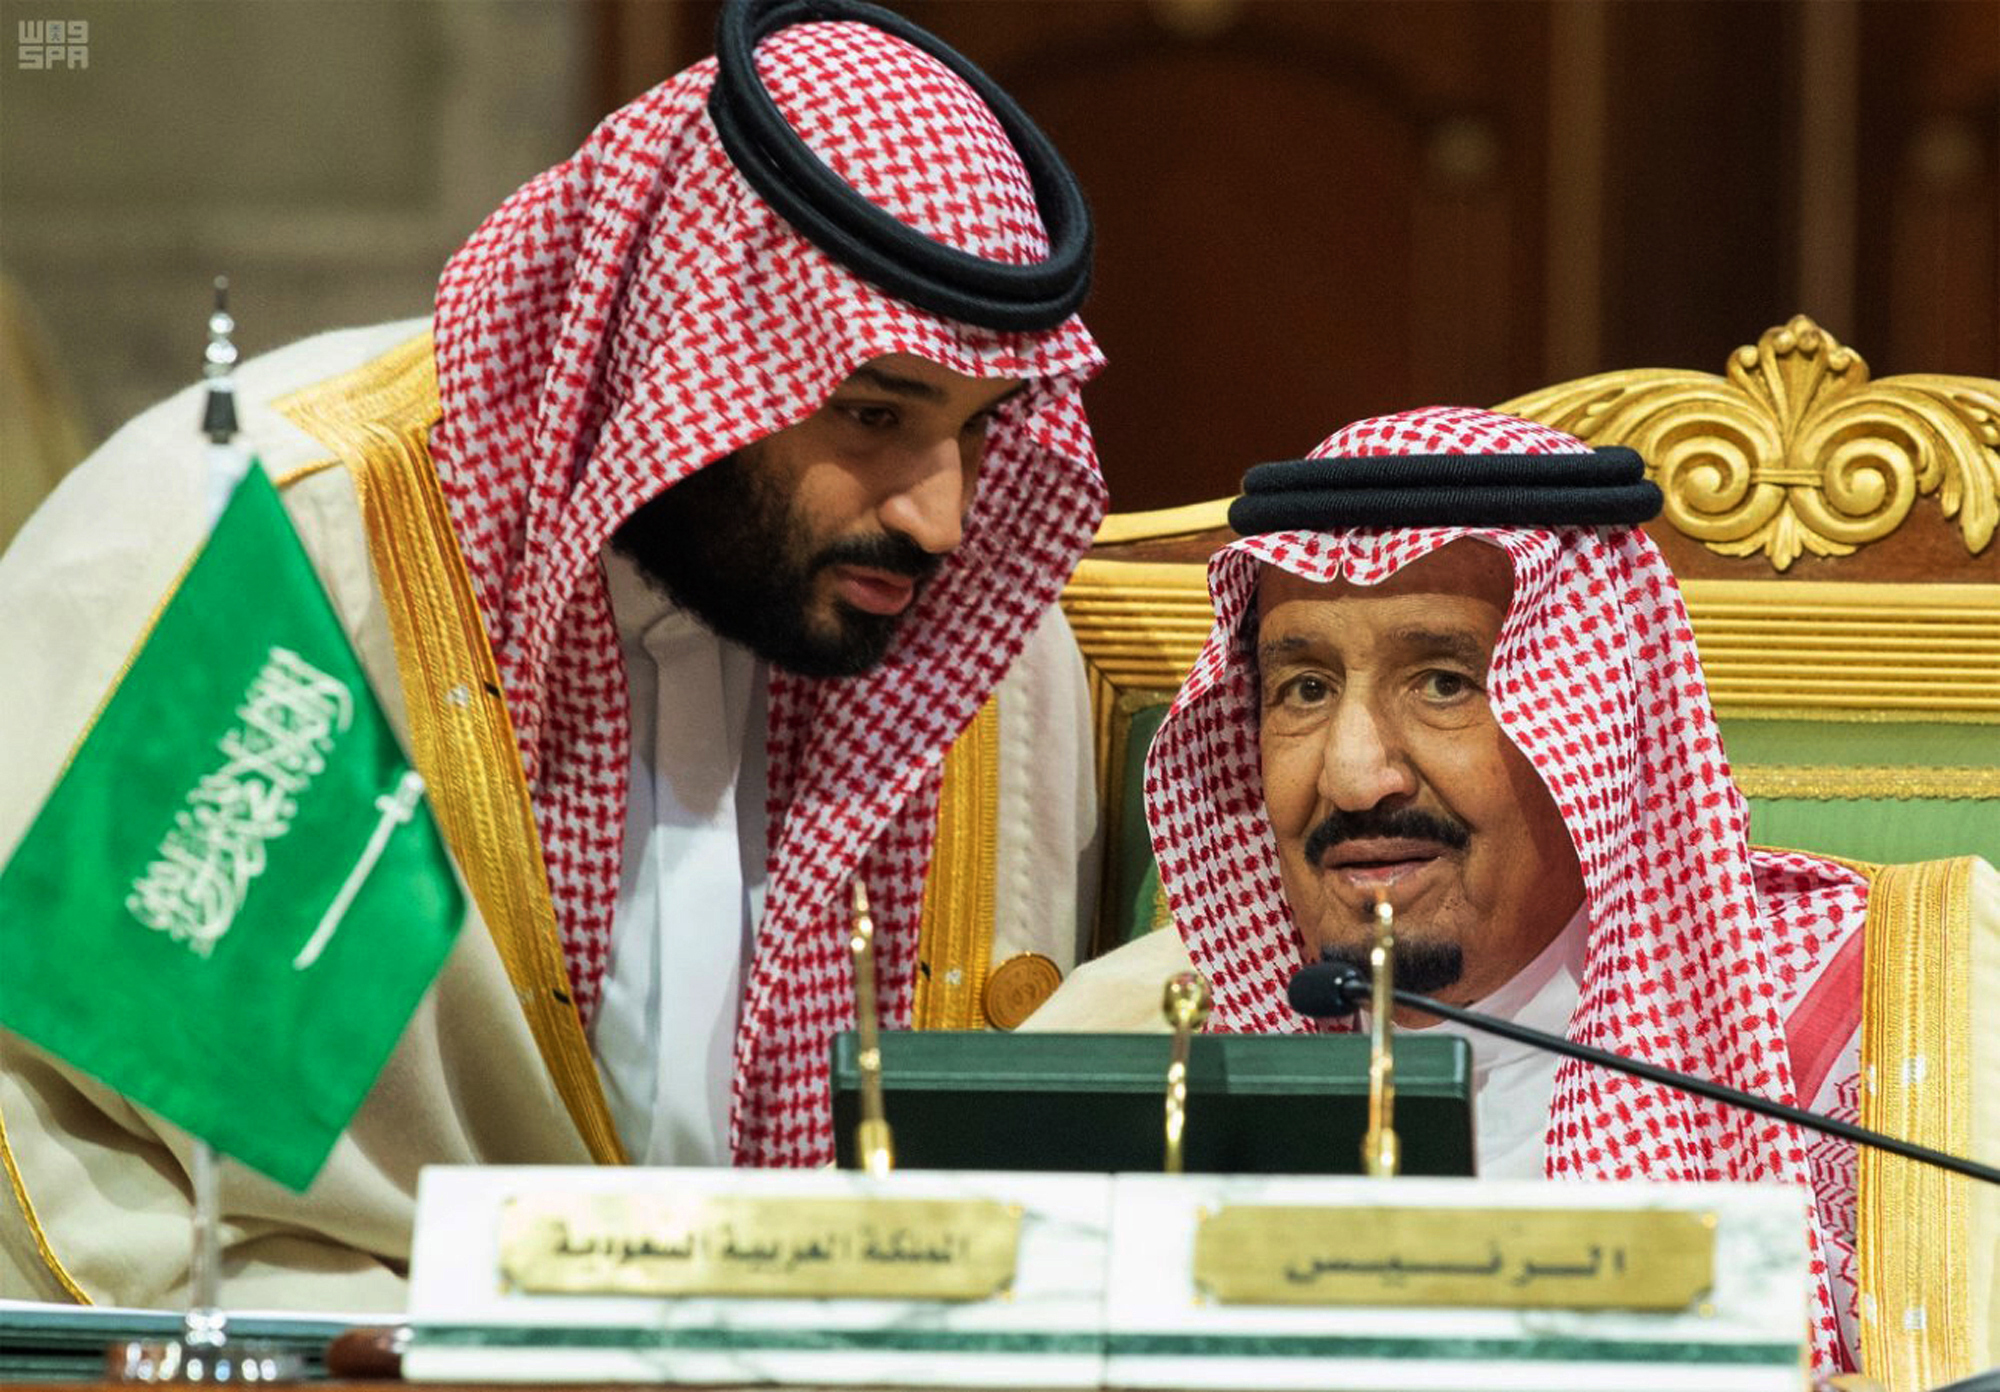 Saudi royal ties to Israel